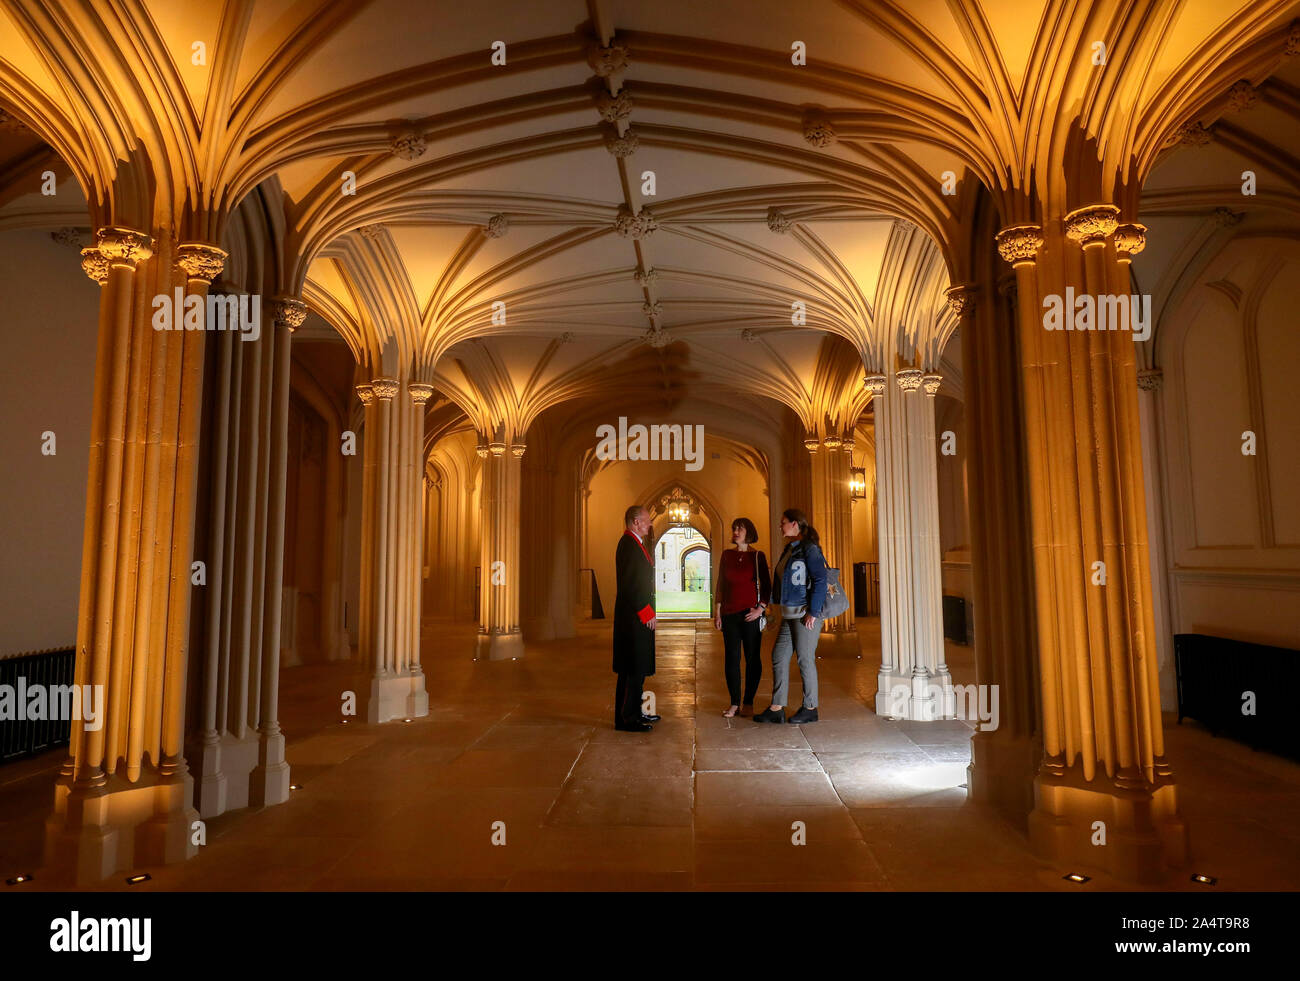 Eine Königliche Sammlung Vertrauen der Mitarbeiter spricht mit Besucher im Gewölbekeller inneren Hall, von George IV. im Jahre 1820 geschaffen und der Öffentlichkeit enthüllt zum ersten Mal in 150 Jahren, einer der beiden neuen Standorte, die den Besuchern im Schloss Windsor geöffnet wurde. Stockfoto